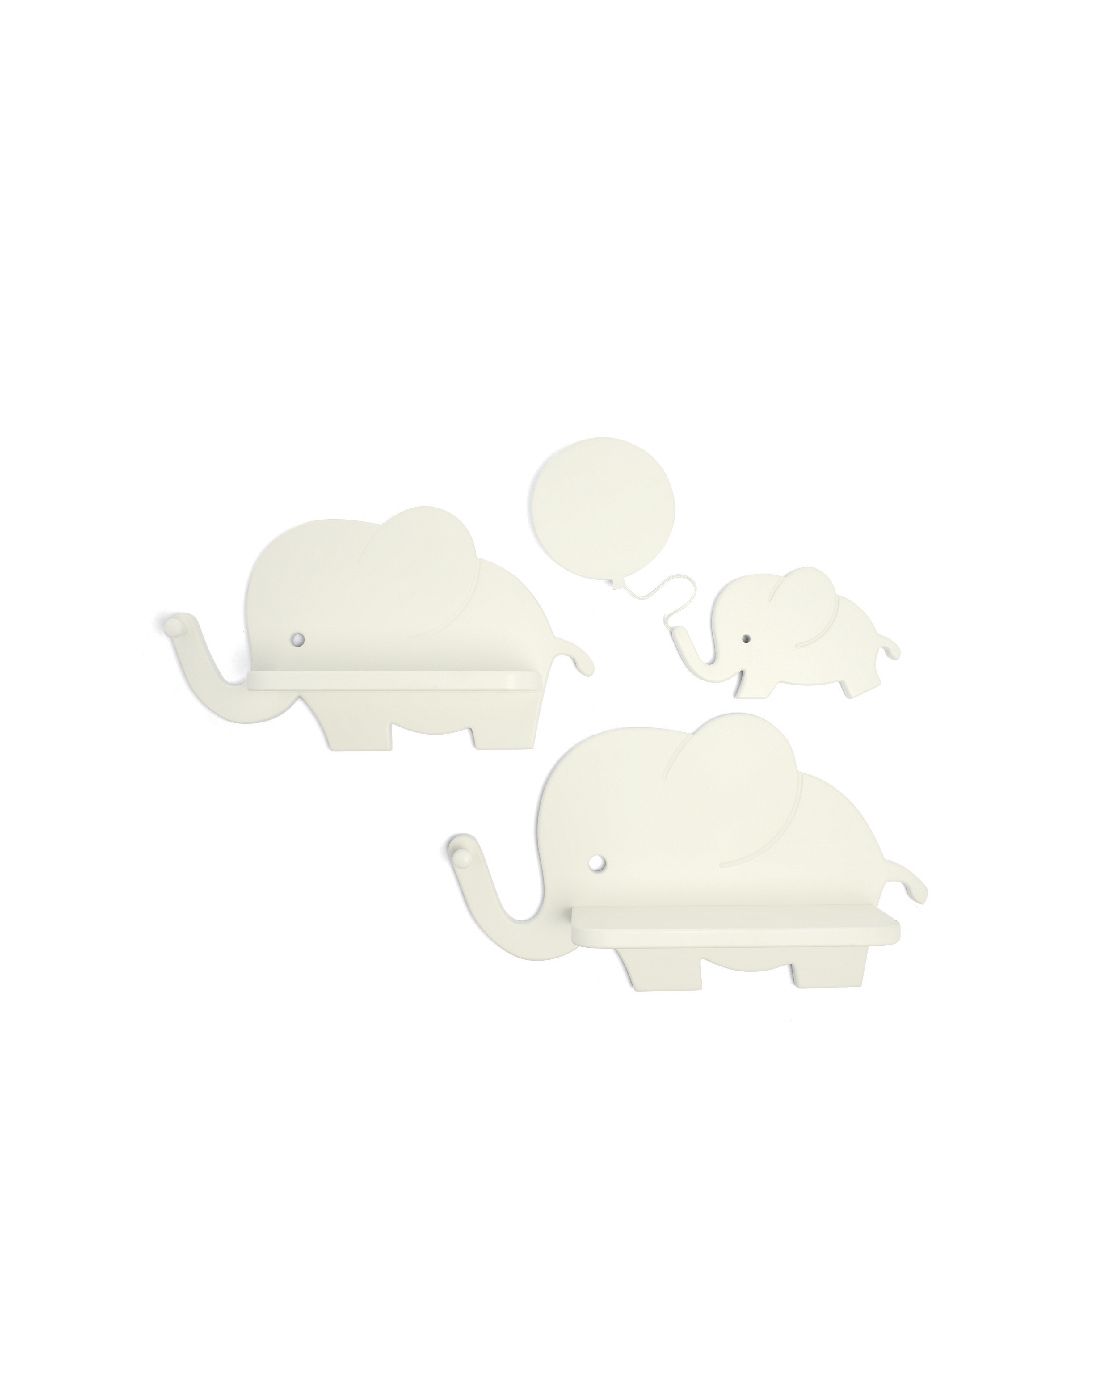 Παιδικά Ράφια και Φωτάκι Νυχτός Mamas & Papas Elephant | LAPIN KIDS